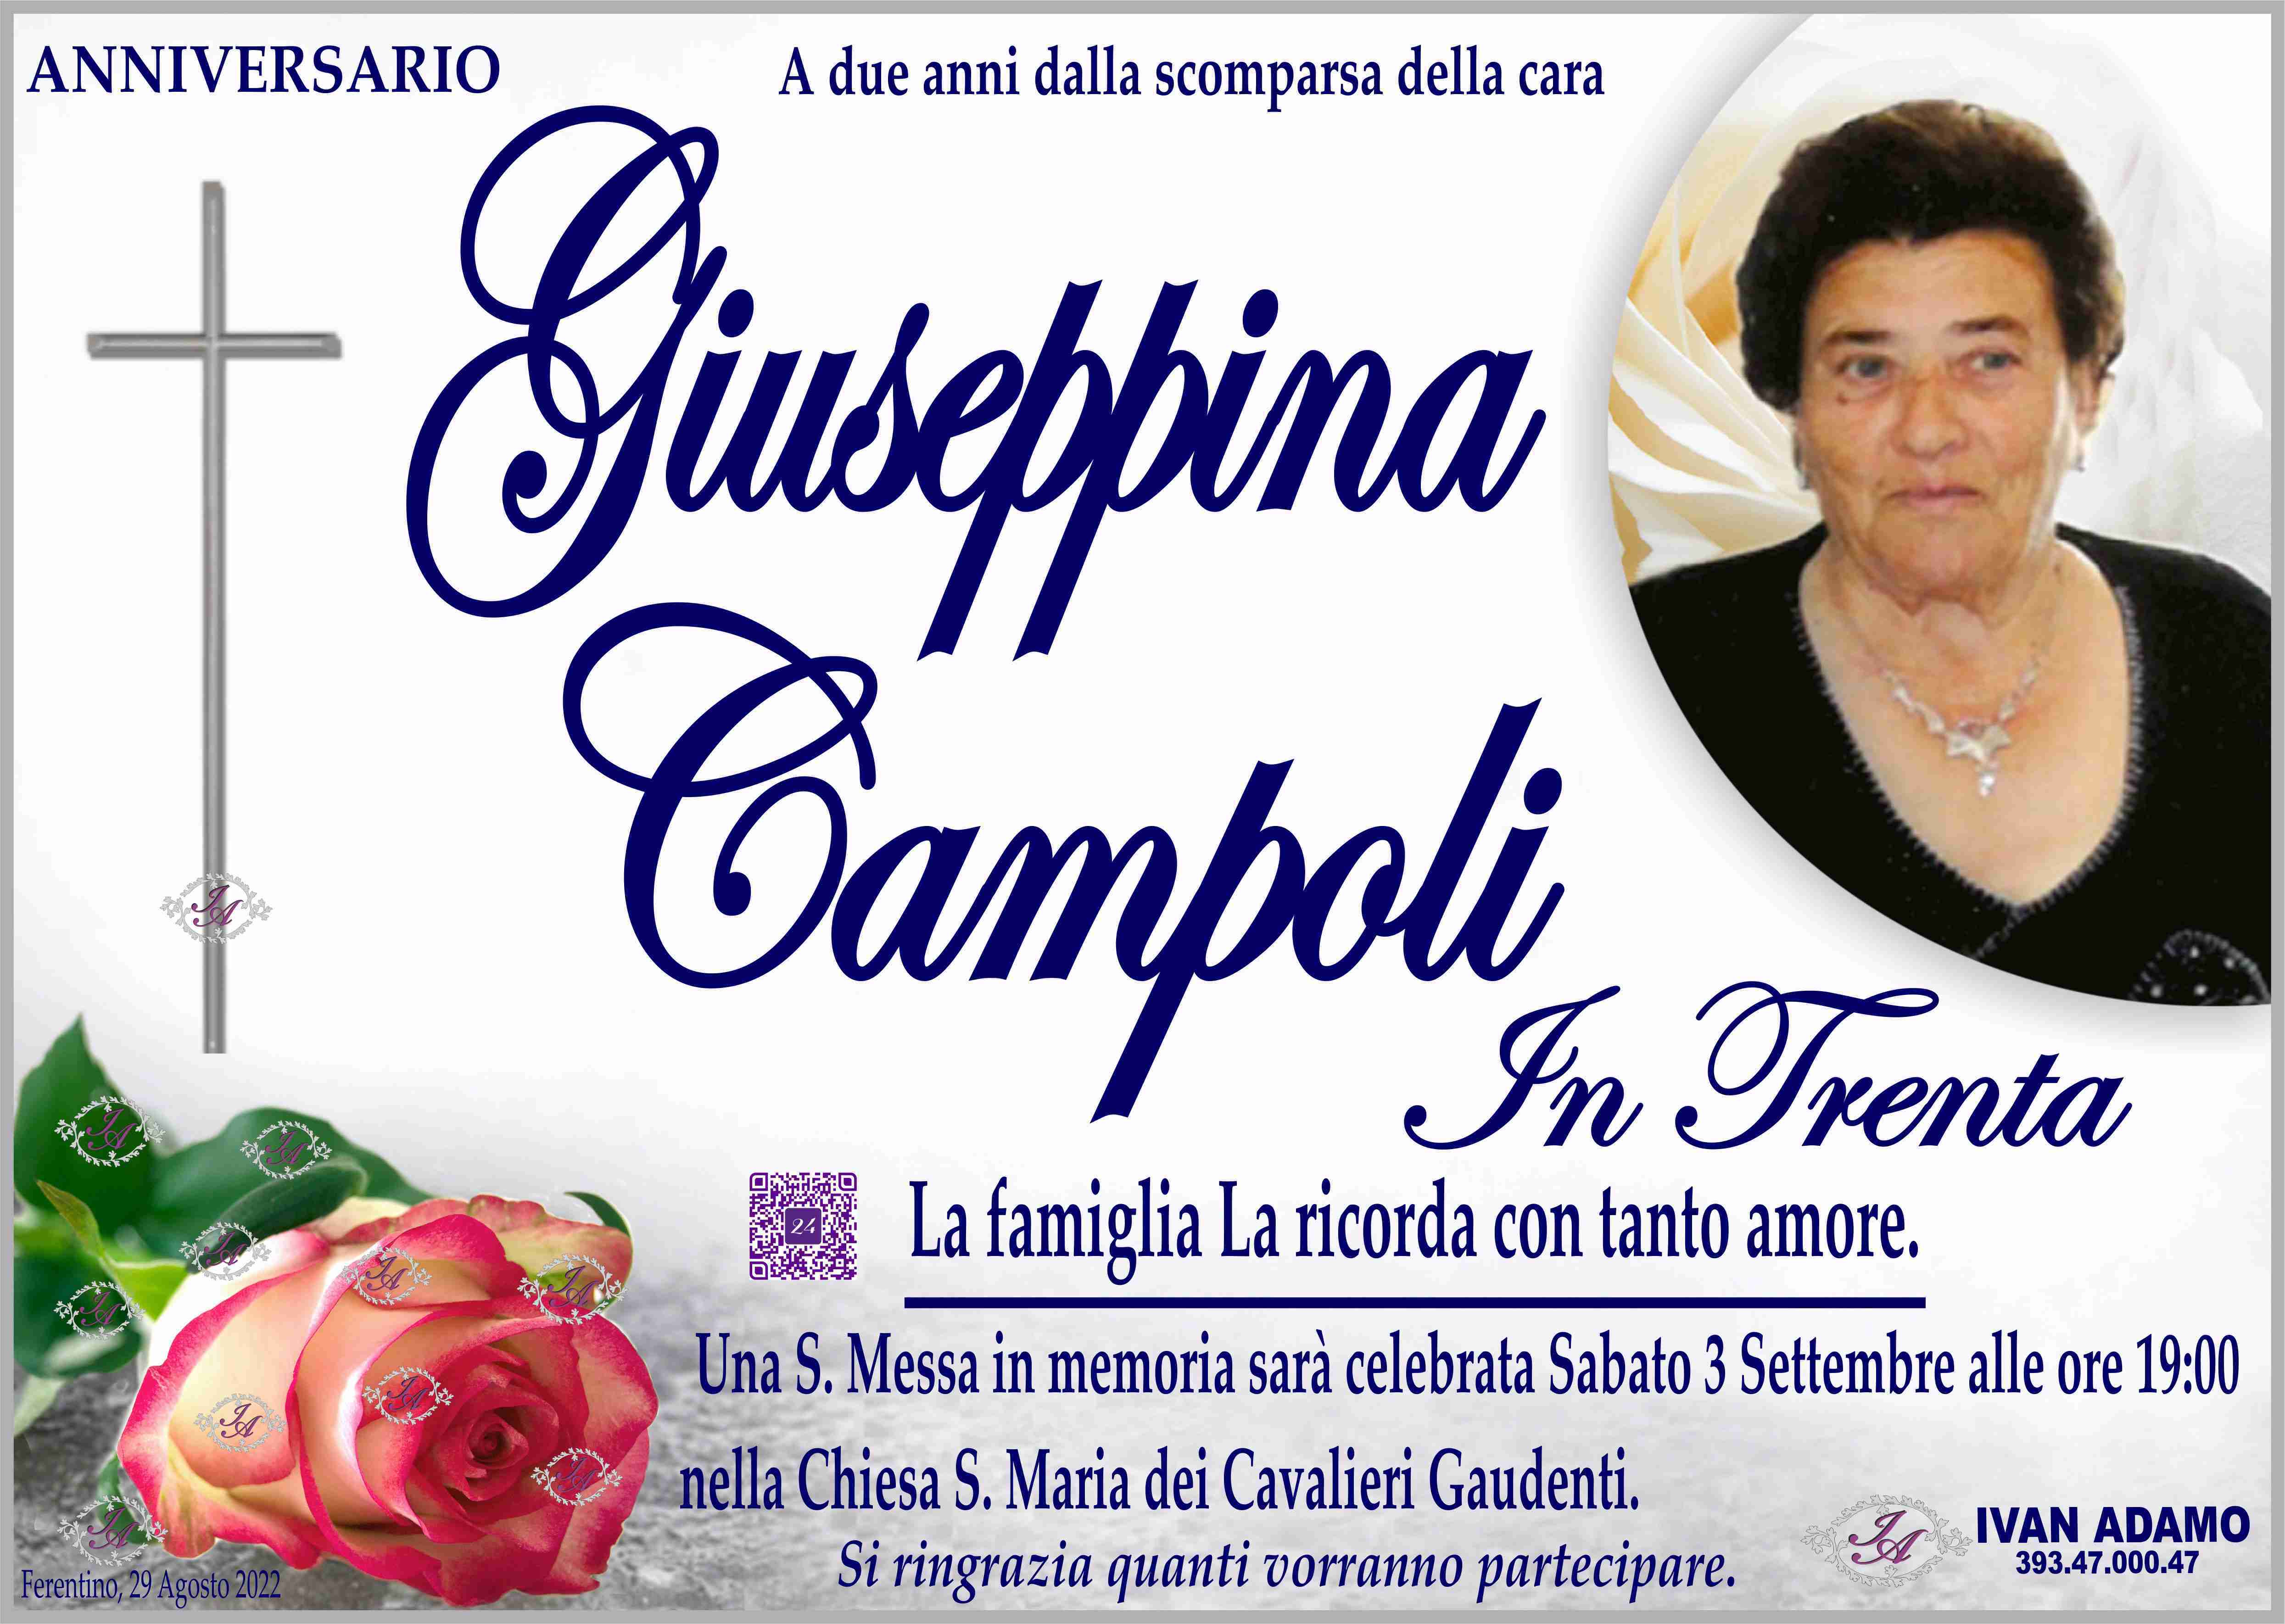 Giuseppina Campoli